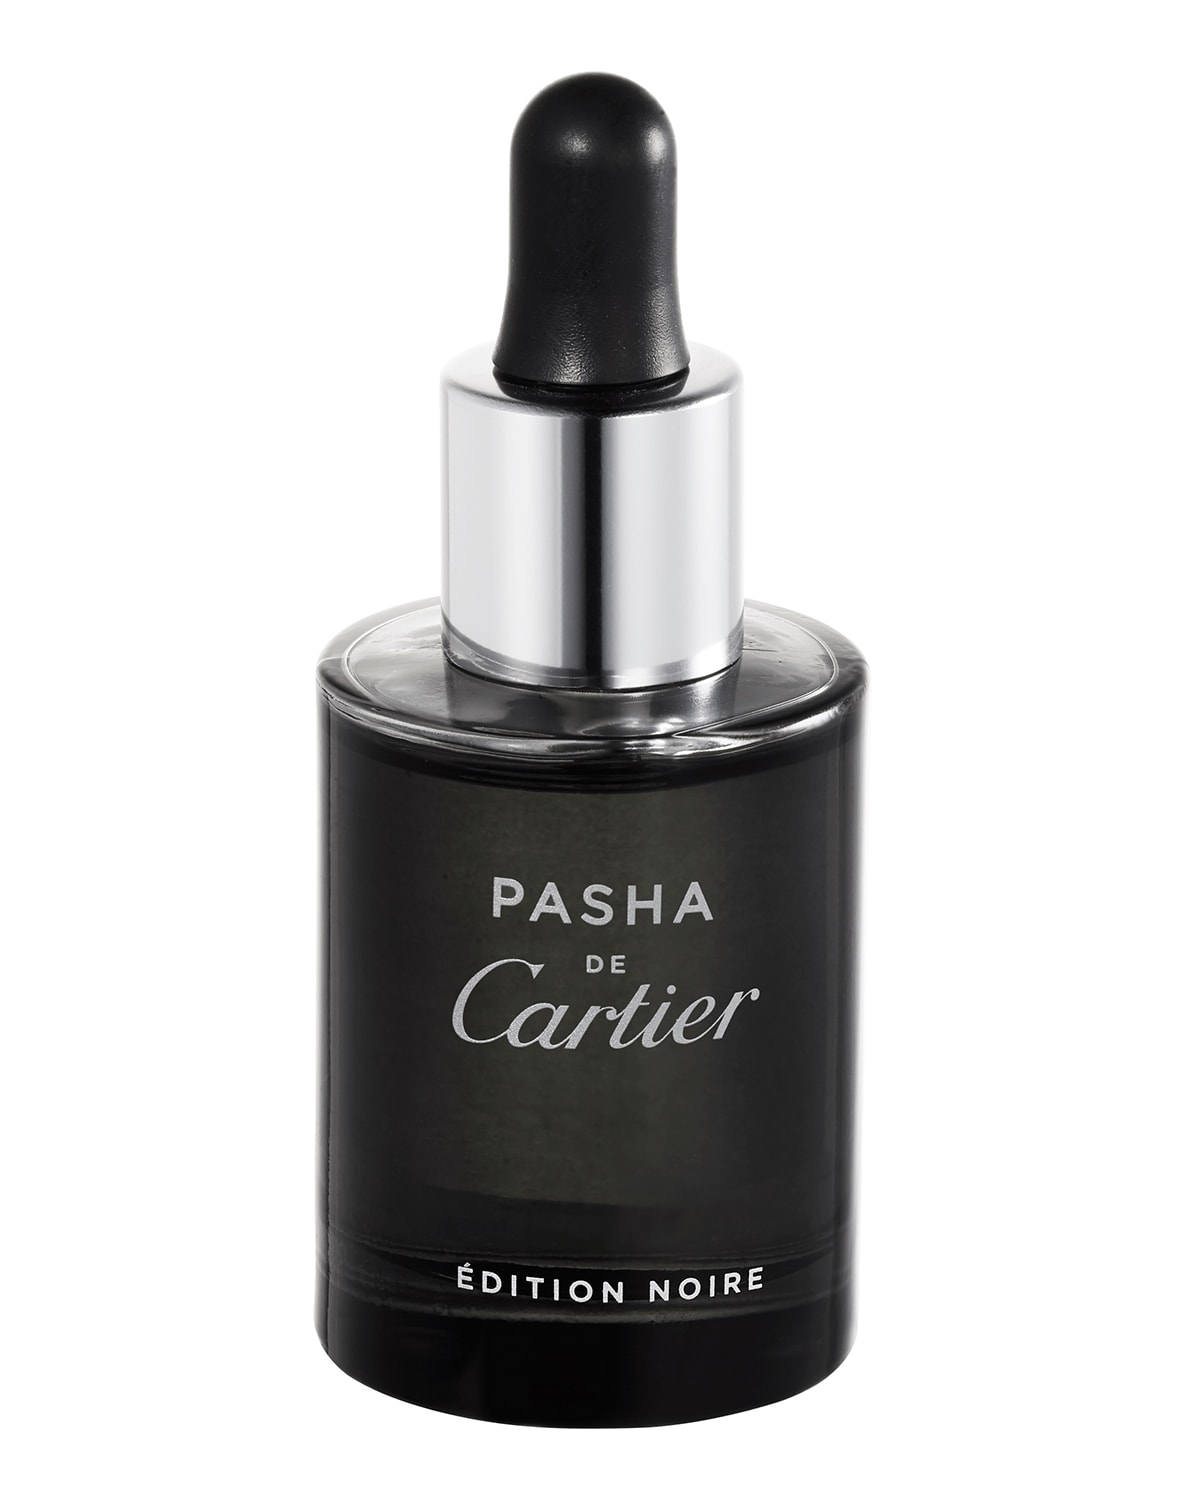 Pasha de Cartier Edition Noire Scented Oil, 0.9 oz./ 26.6 mL